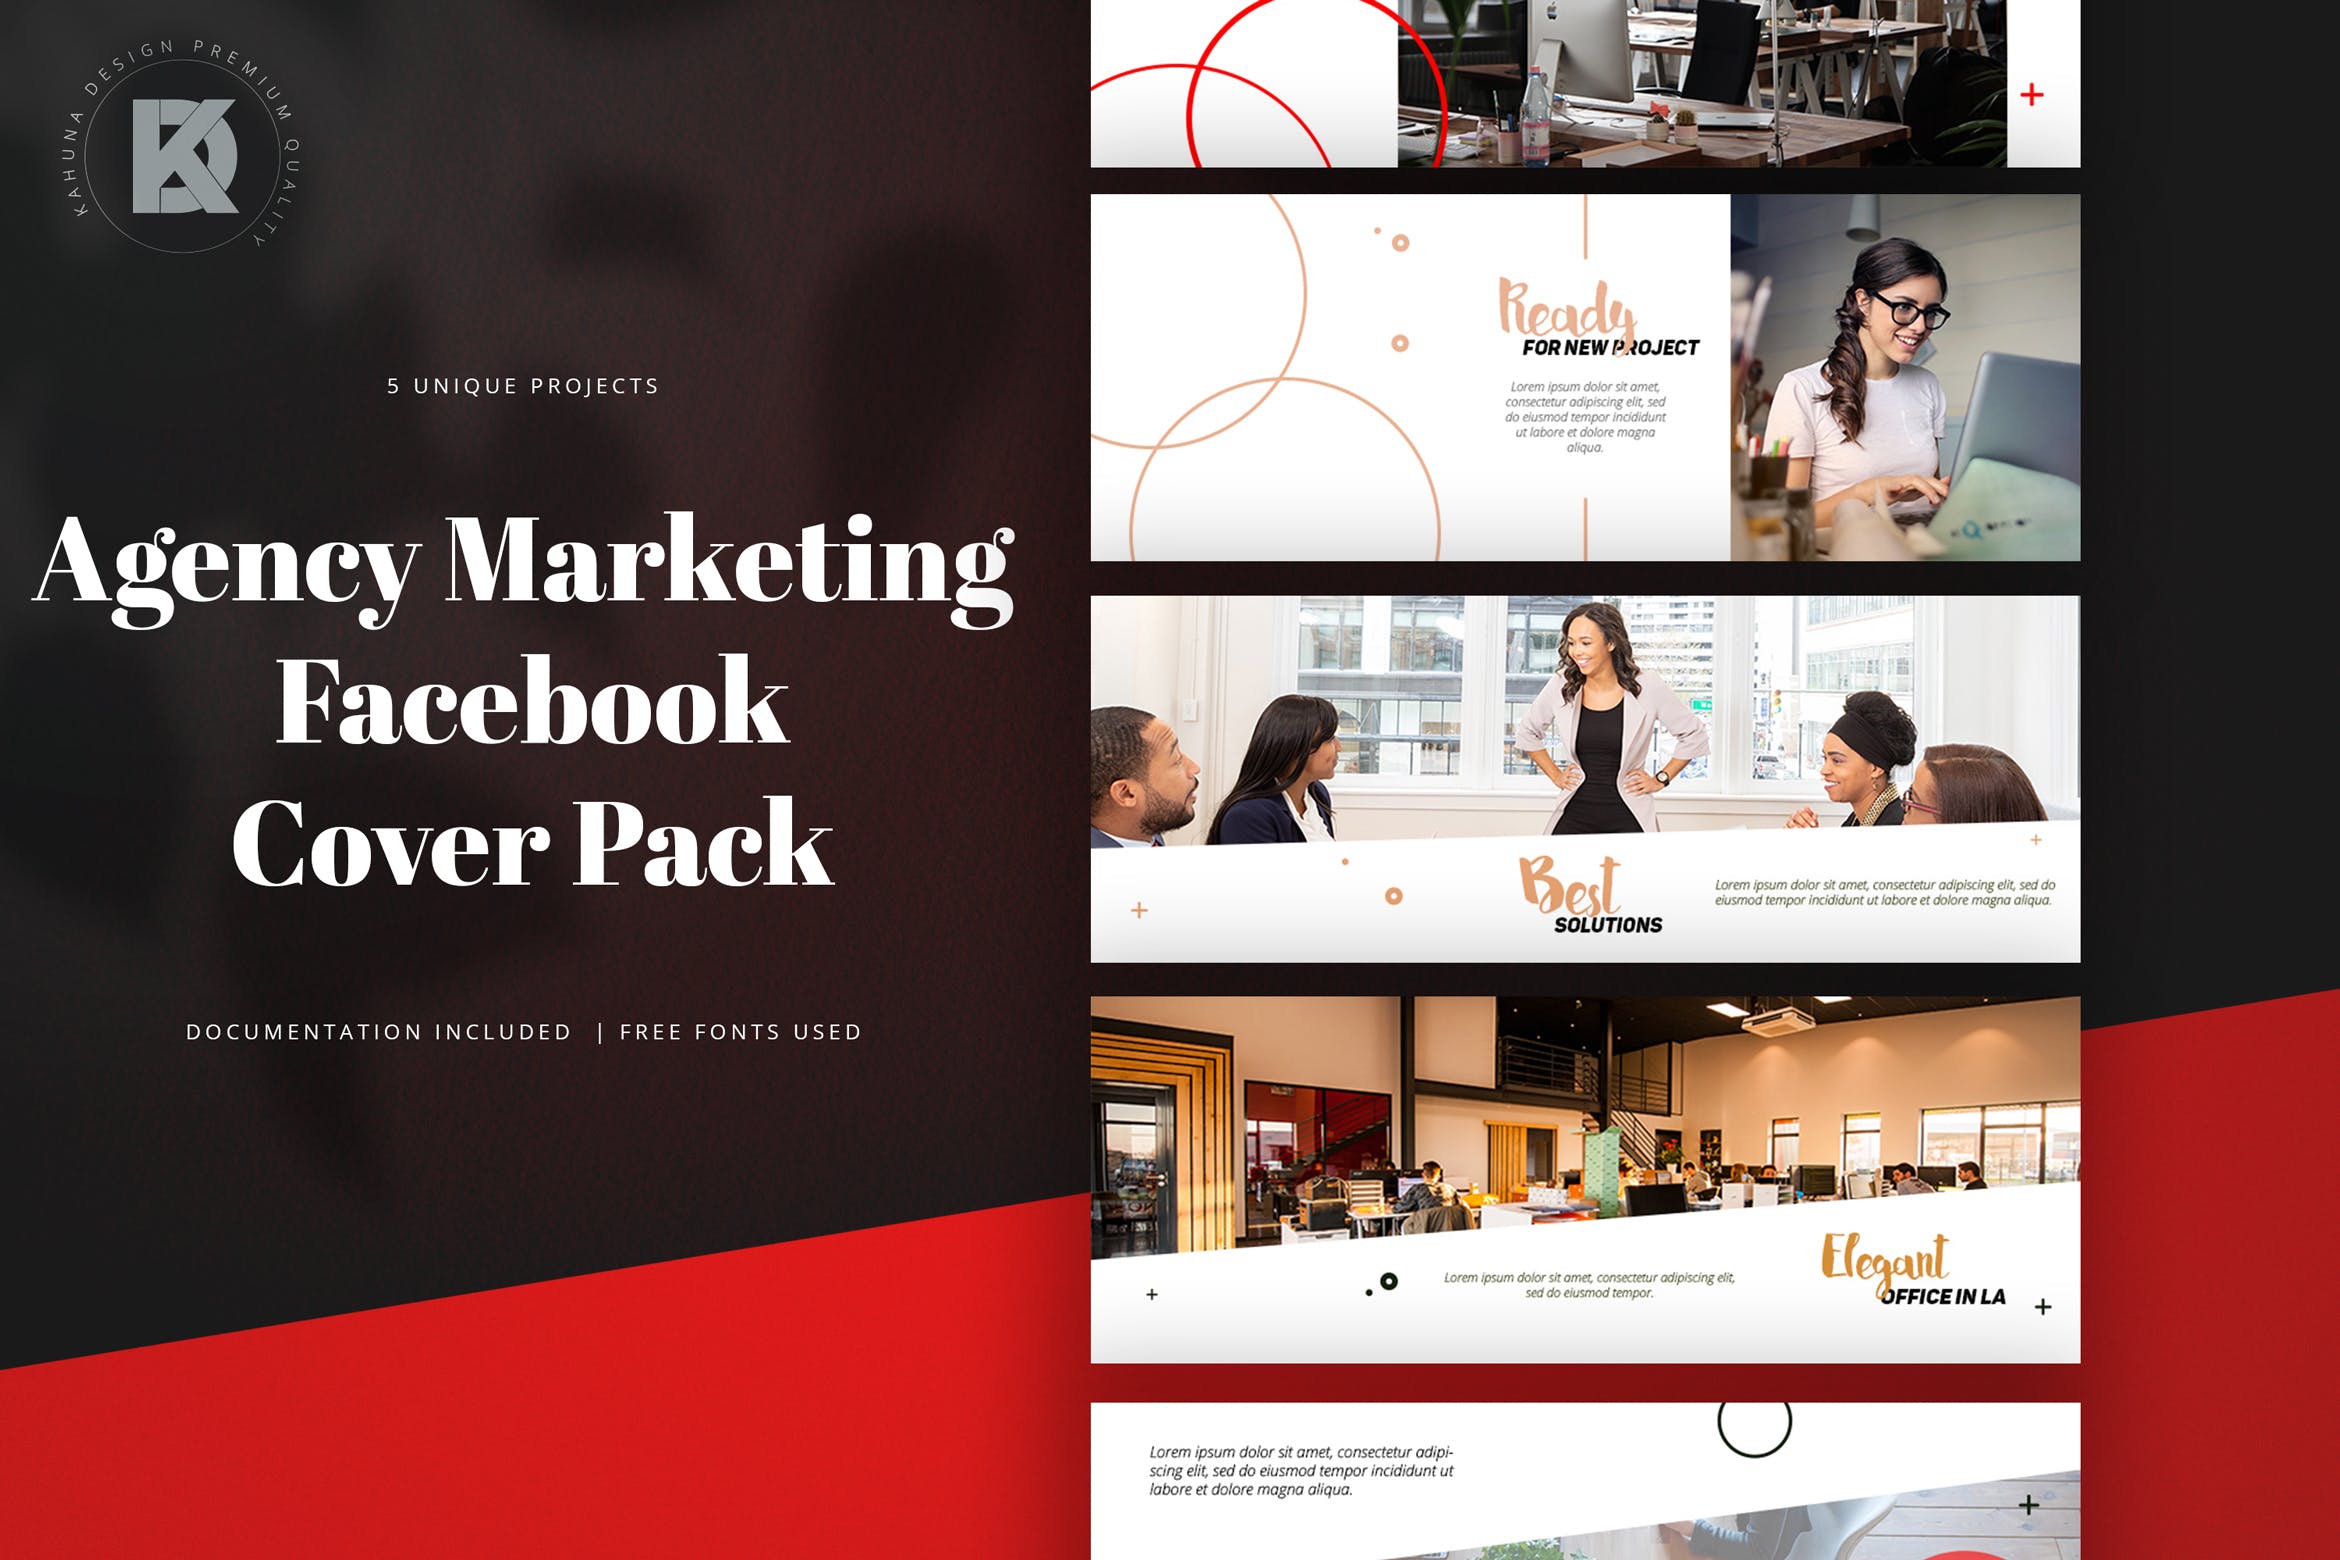 代理行销Facebook封面设计模板素材库精选 Agency Marketing Facebook Cover Pack插图